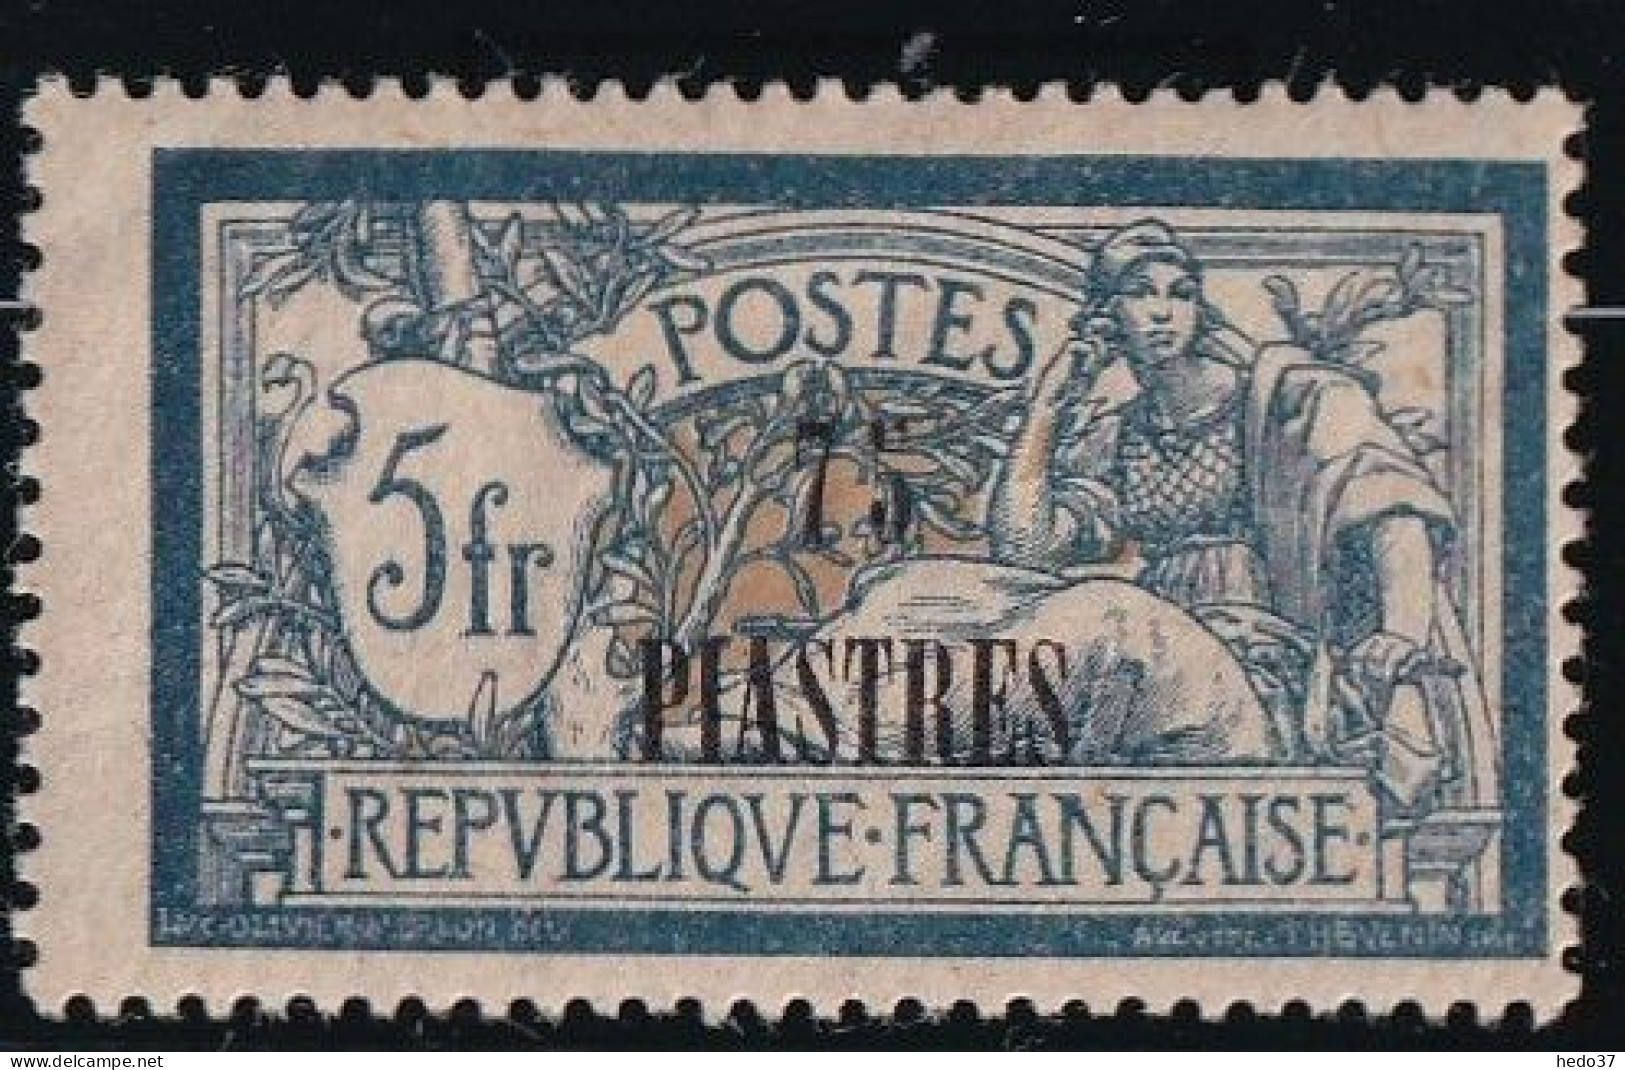 Levant N°37a - Variété Chiffres écartés - Neuf * Avec Charnière - TB - Unused Stamps